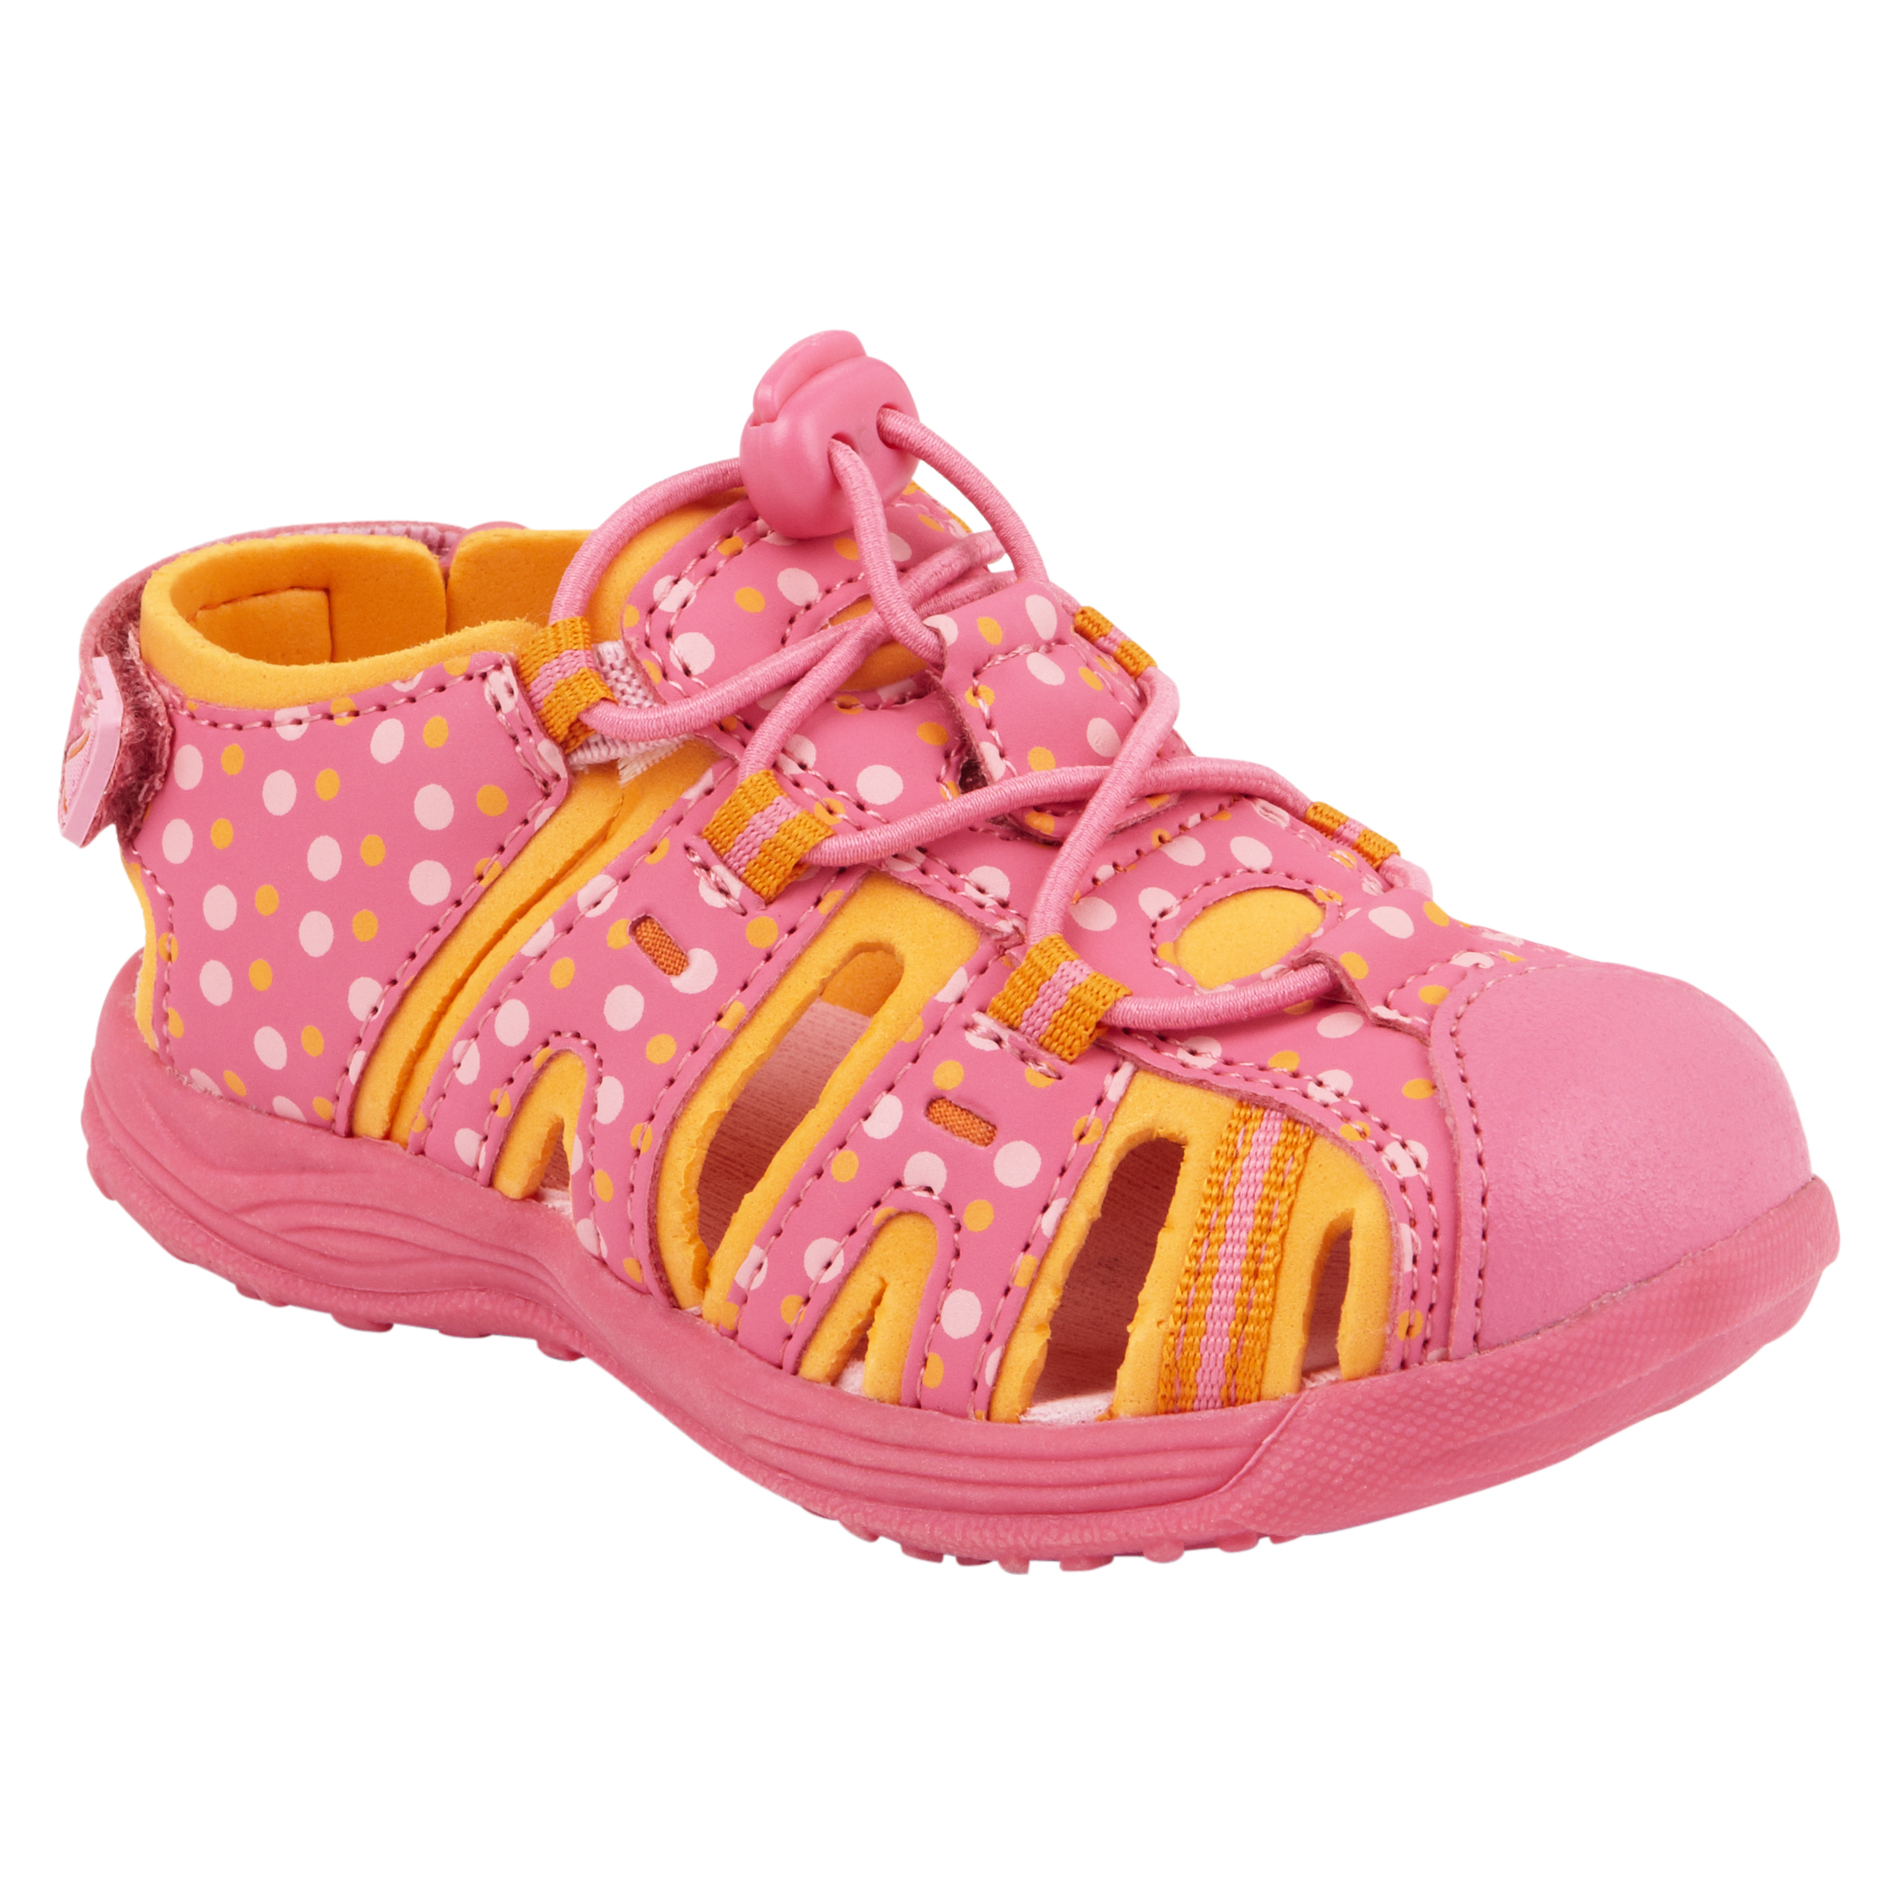 WonderKids Toddler Girl's Sandal Beth - Multi